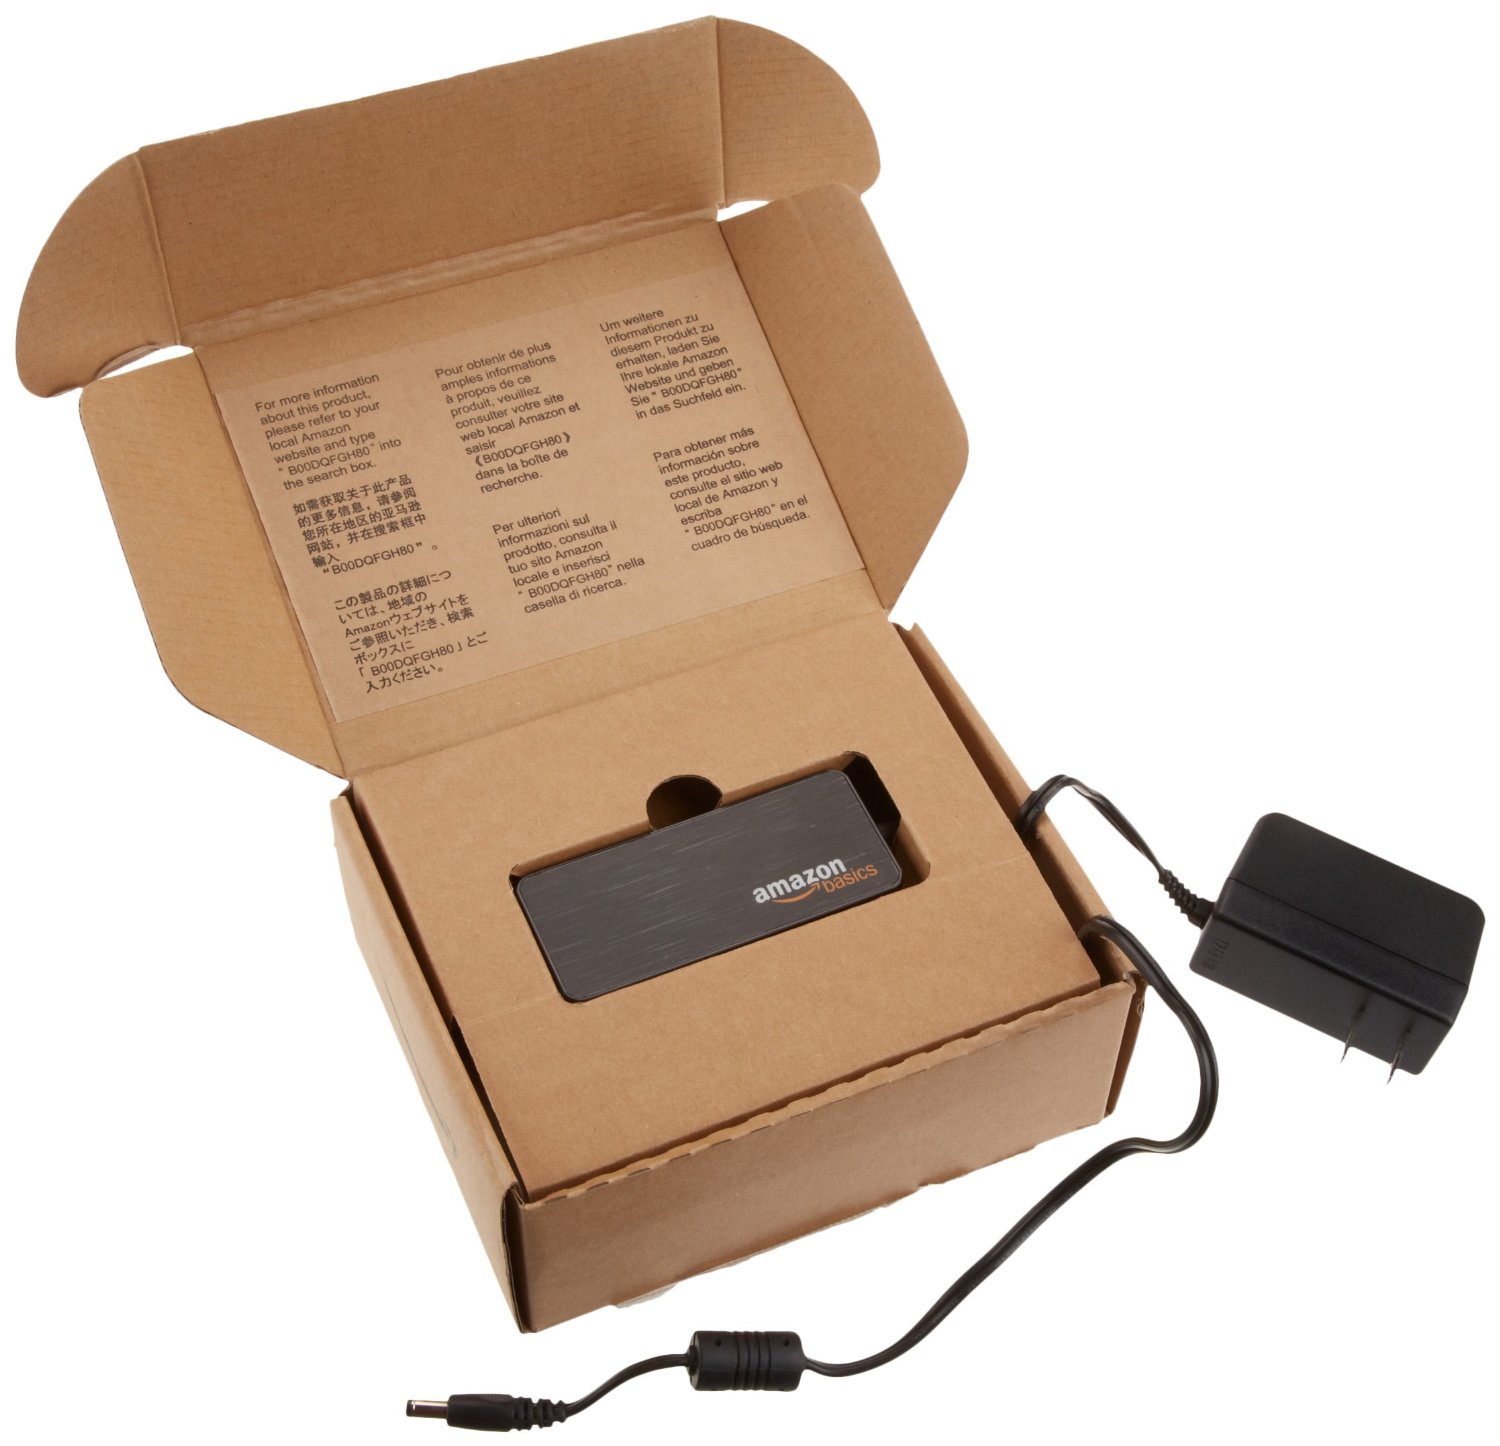 AmazonBasics 4 Port USB 3.0 Hub with 5V/2.5A power adapter